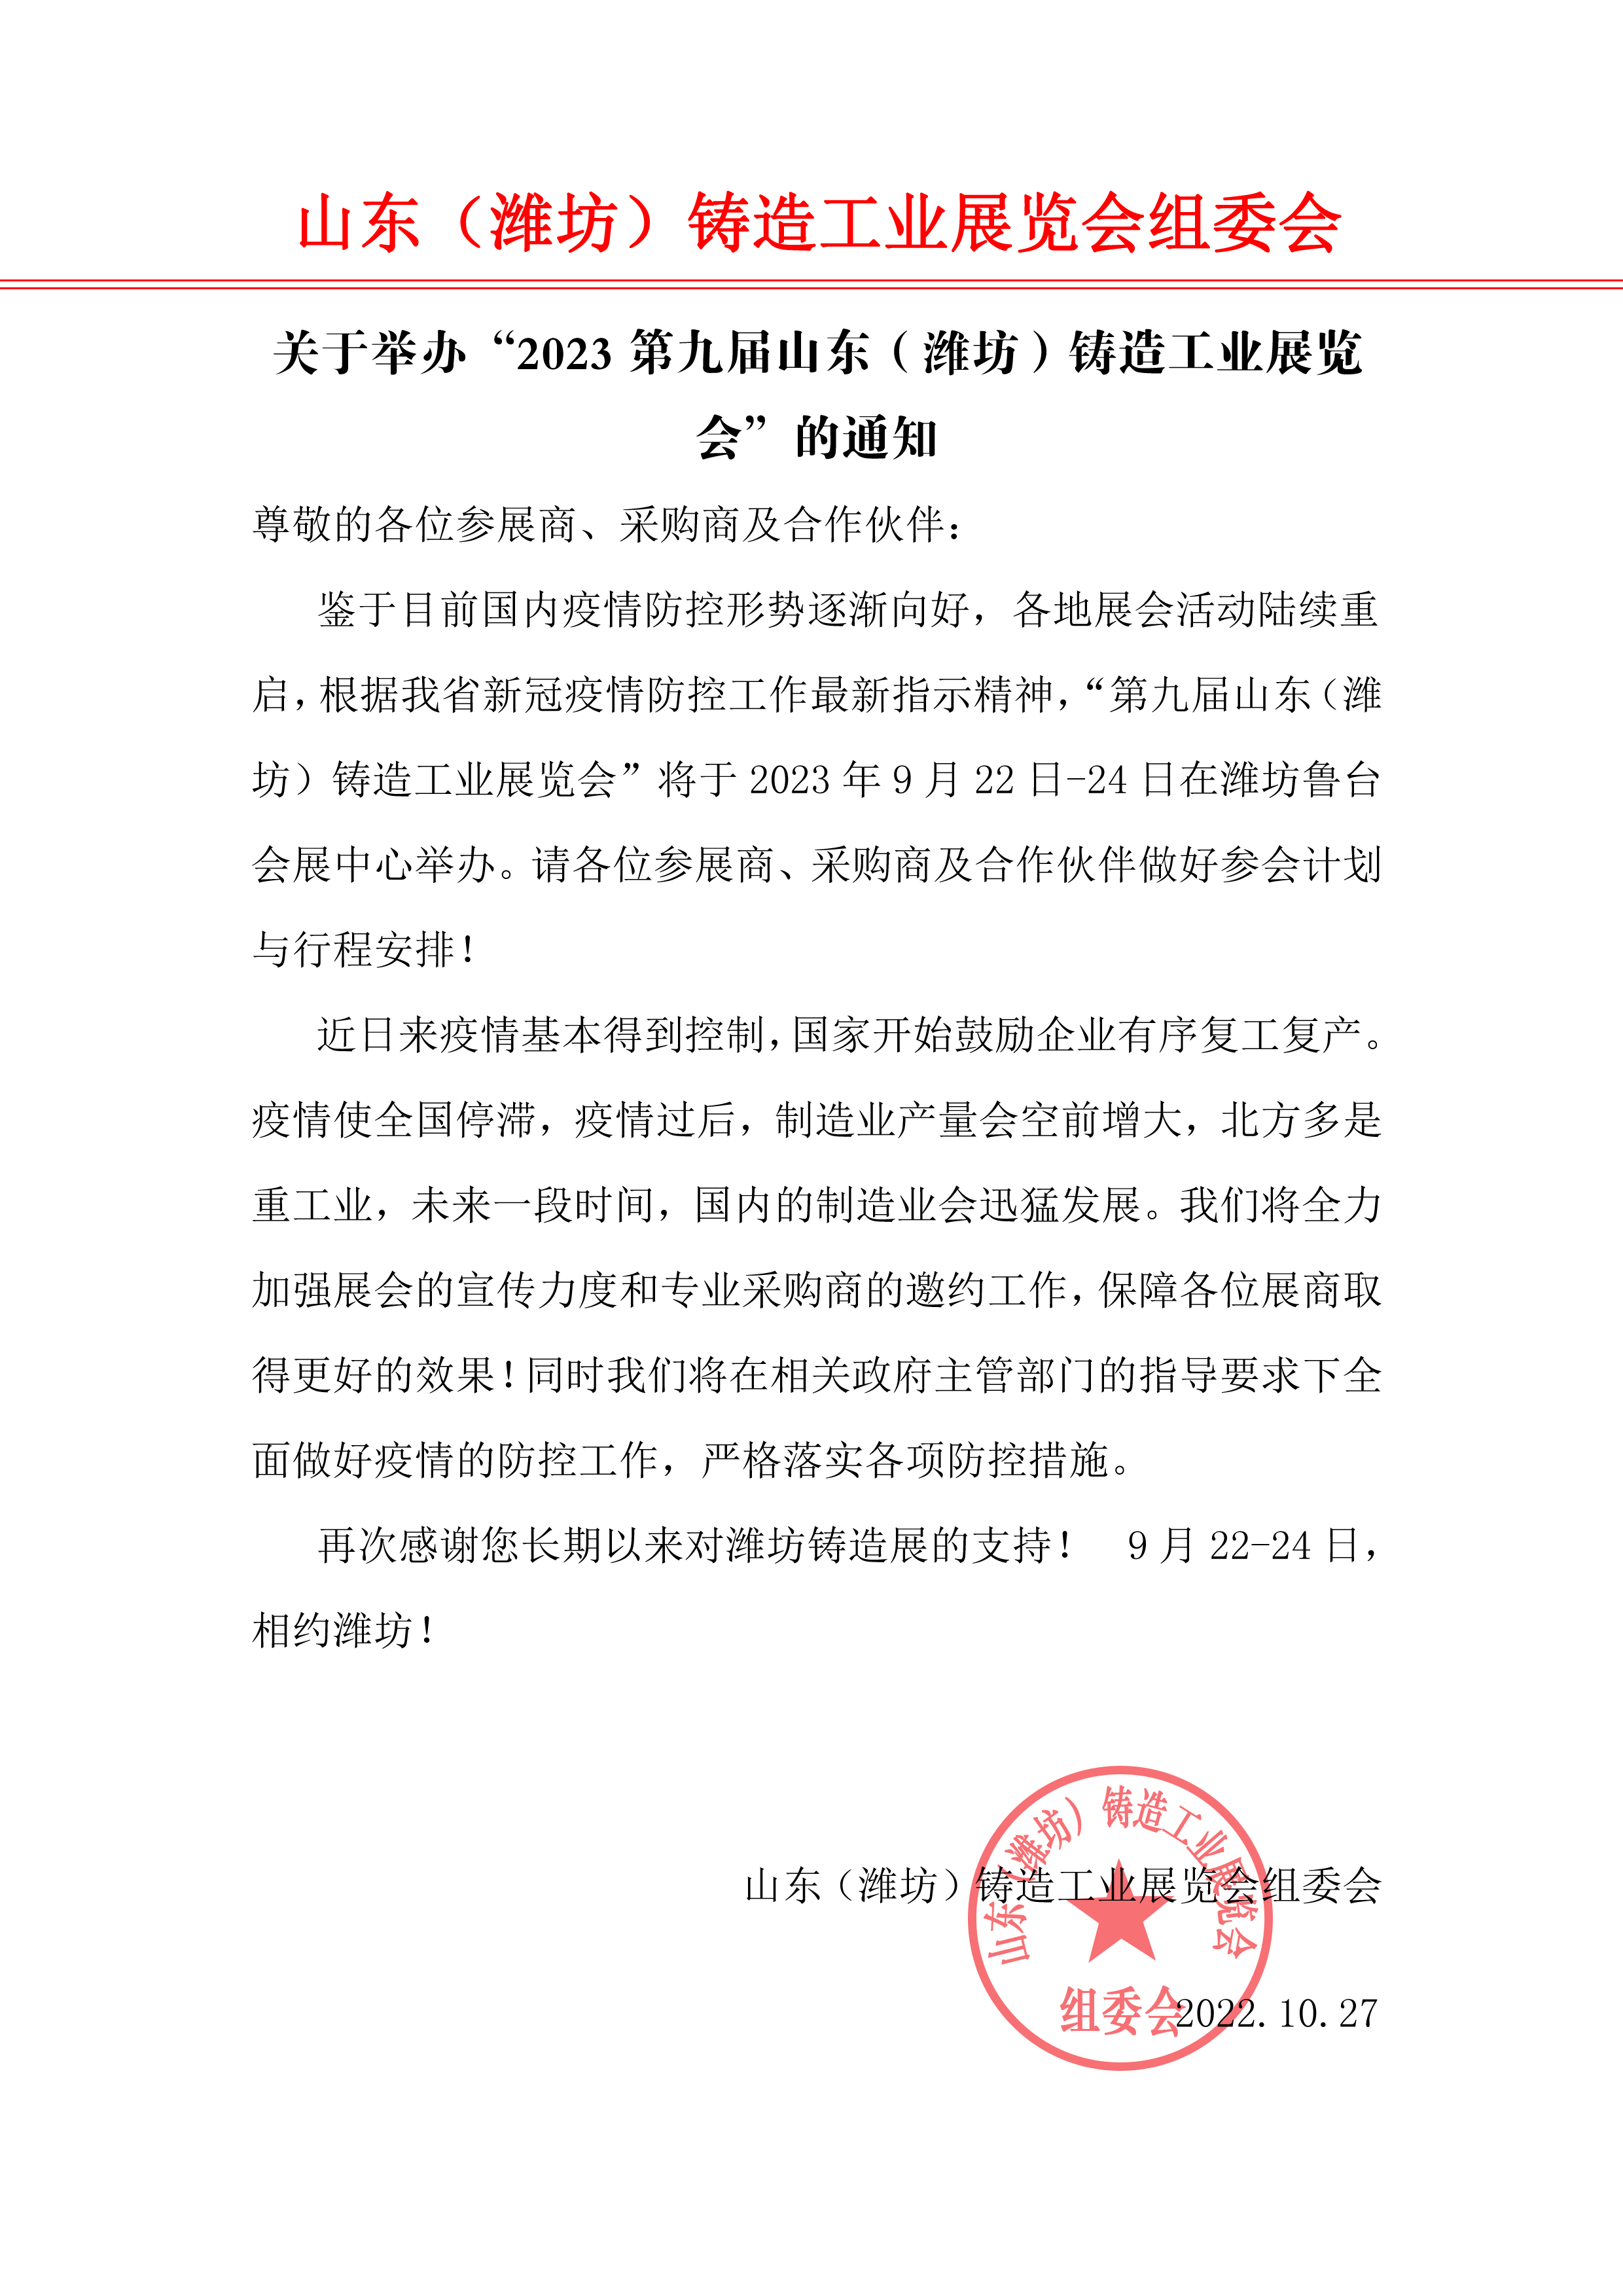 关于举办“2023第九届山东（潍坊）铸造工业展览会”的通知